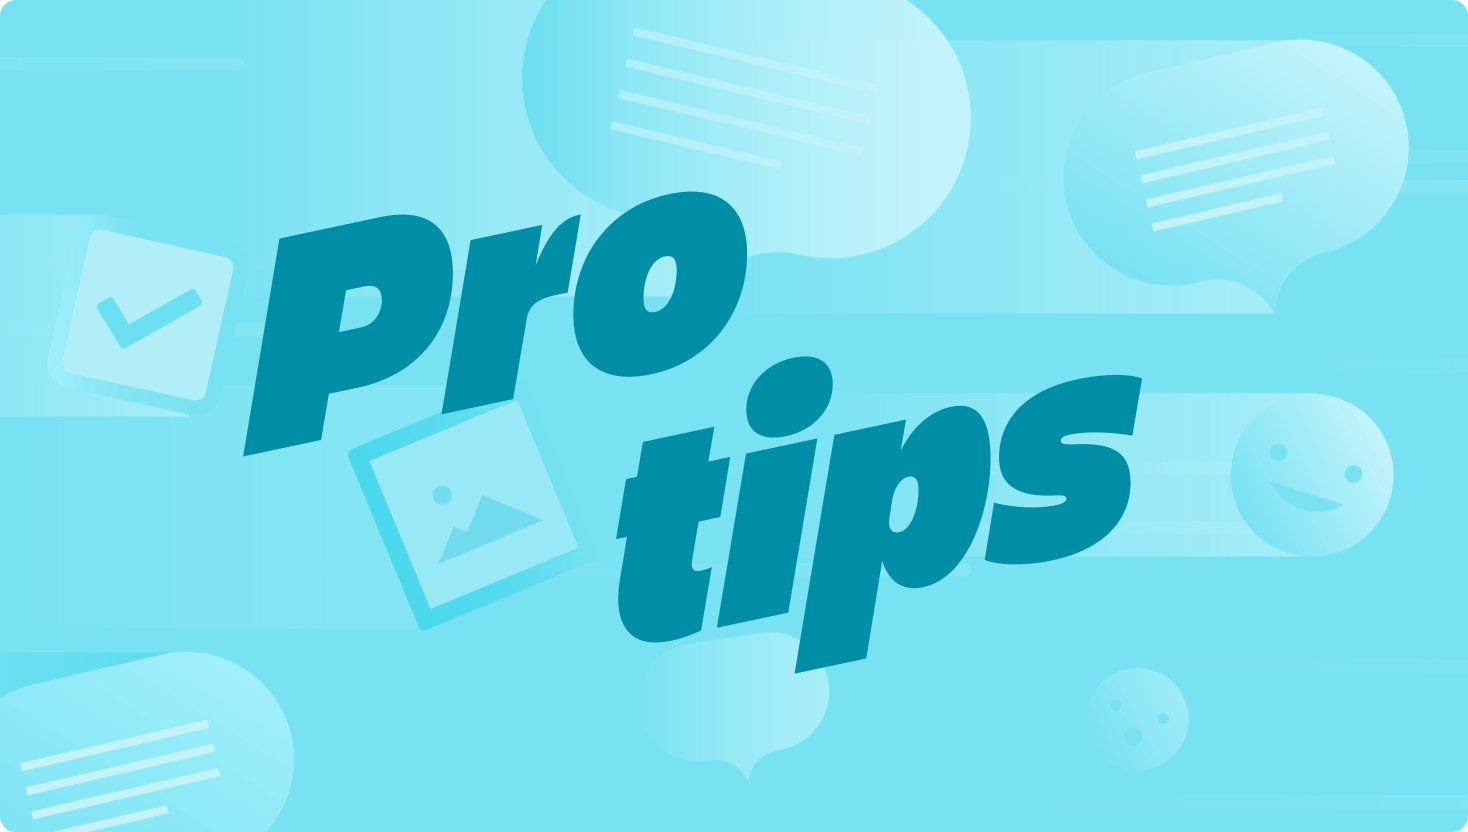 Ilustração mostrando comentários, campos de seleção, fotos e emojis passando voando, com as palavras "pro tip" em destaque.